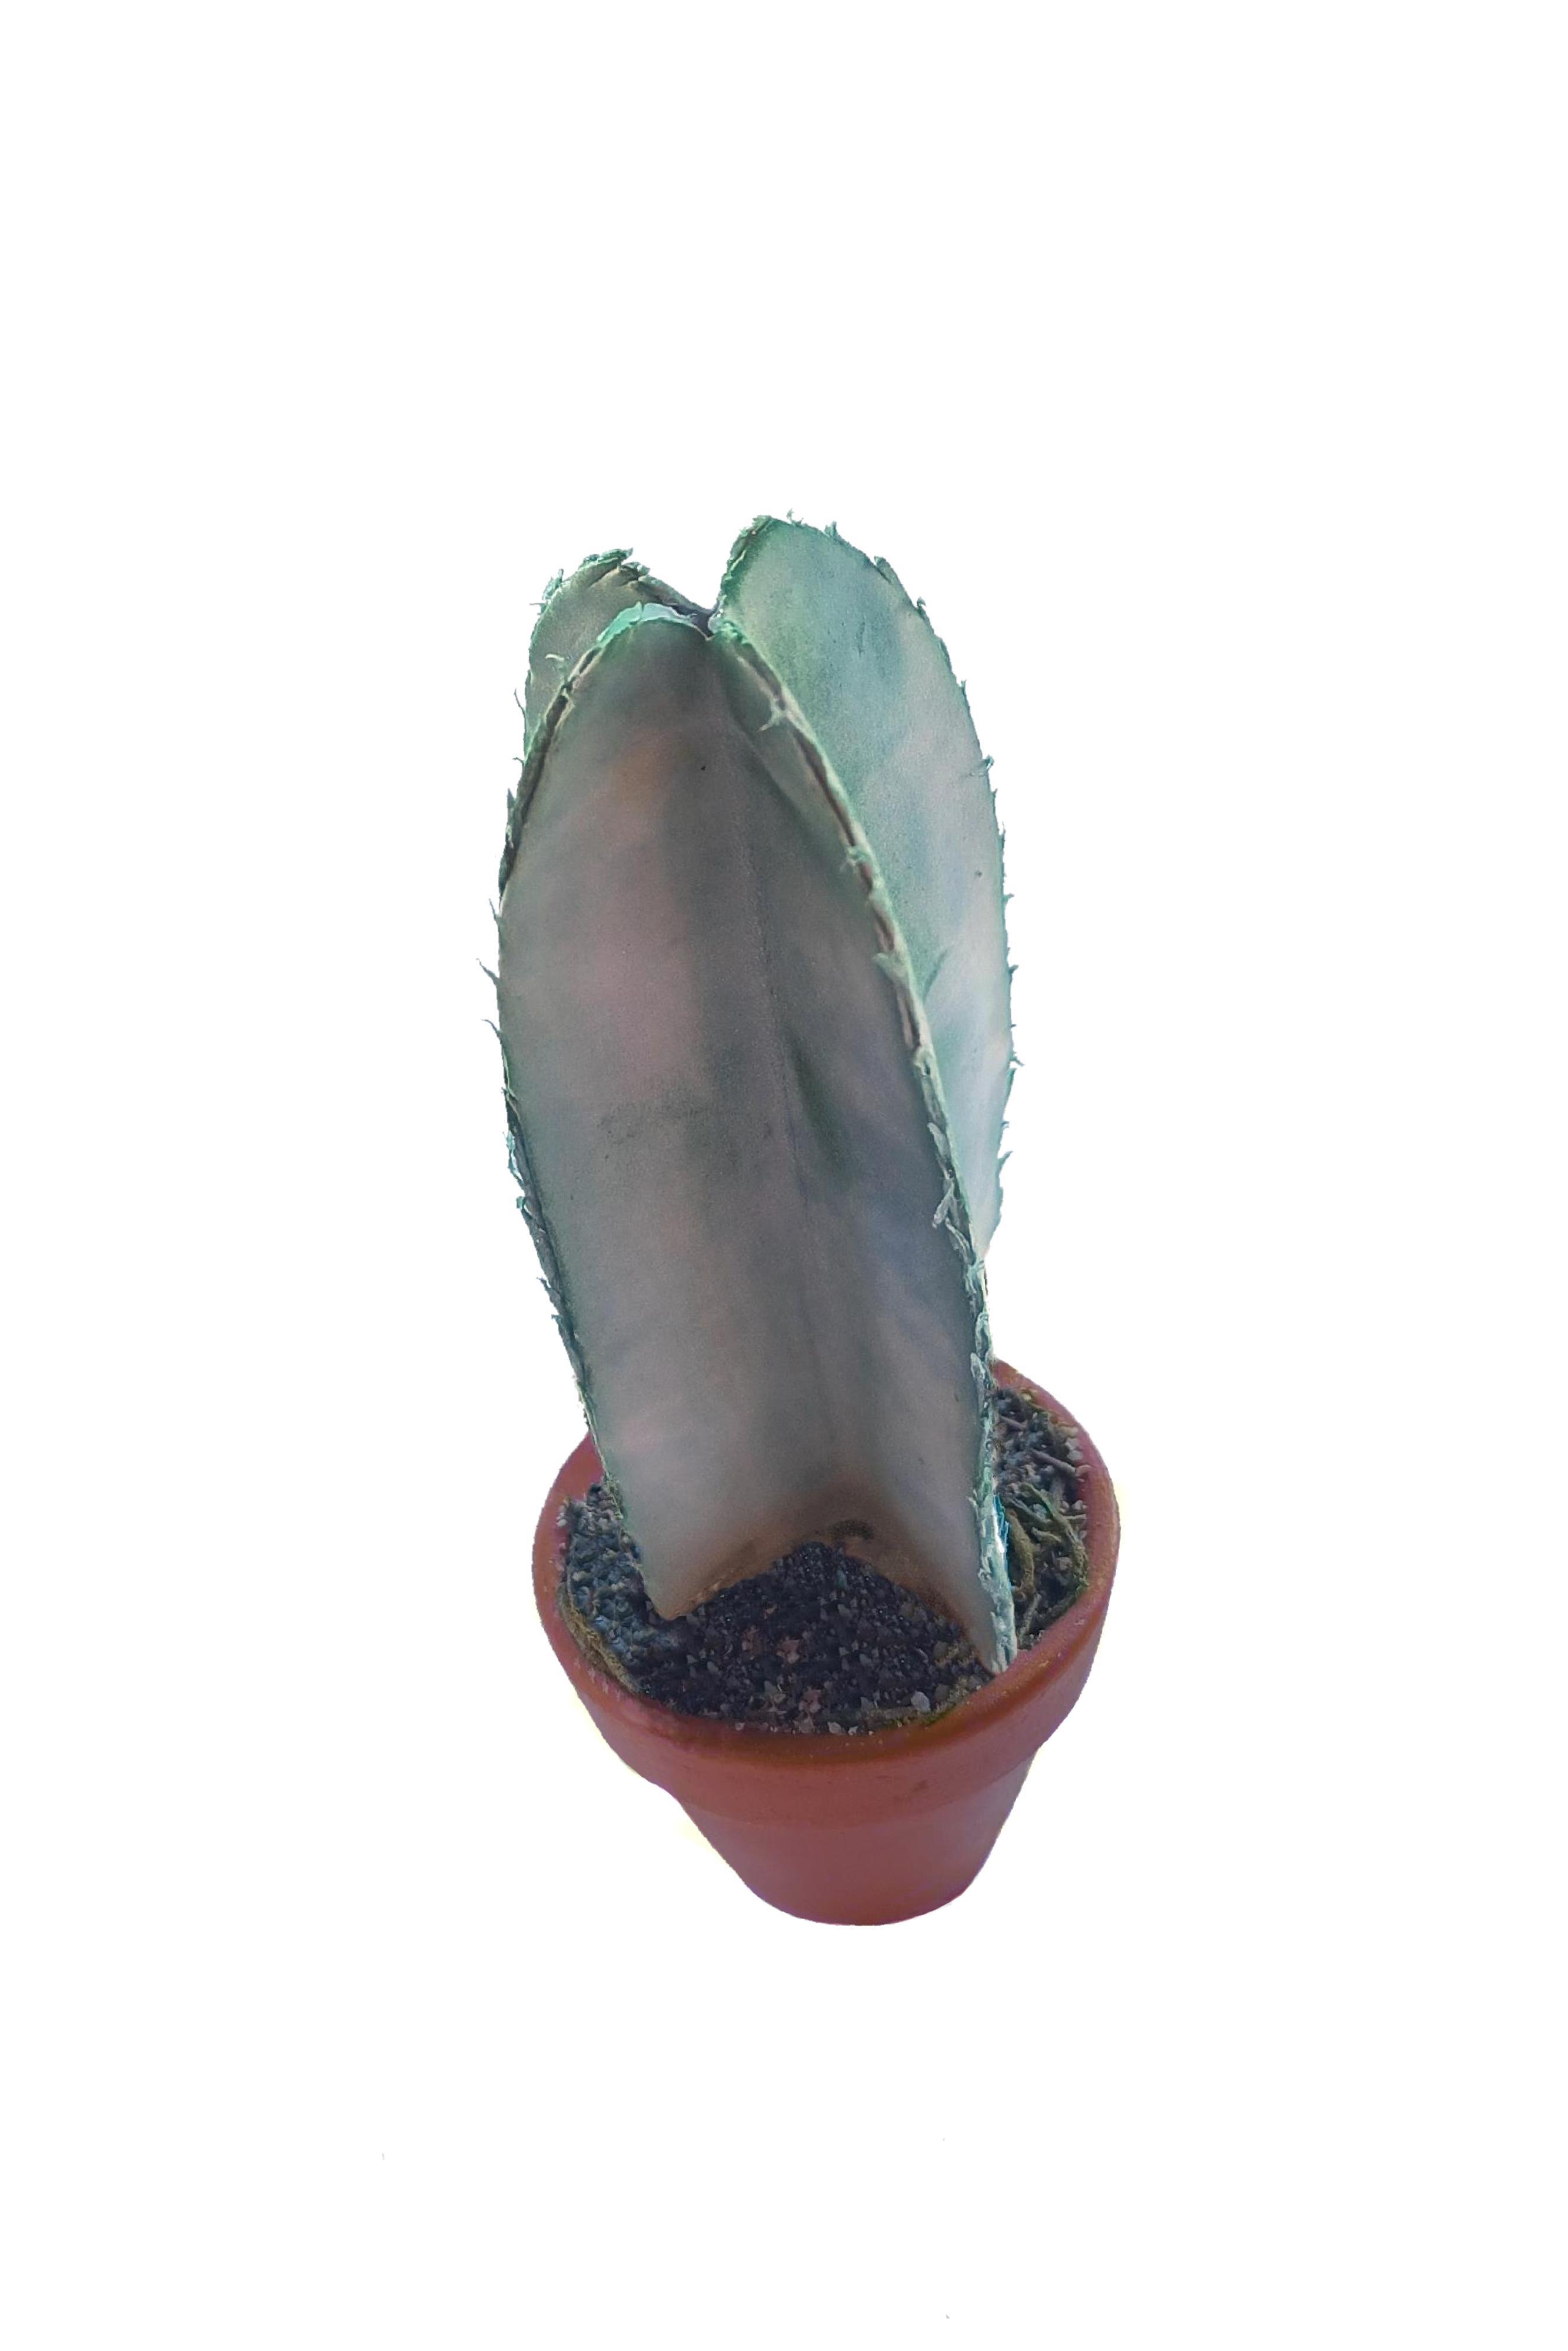 PG055 - Cactus